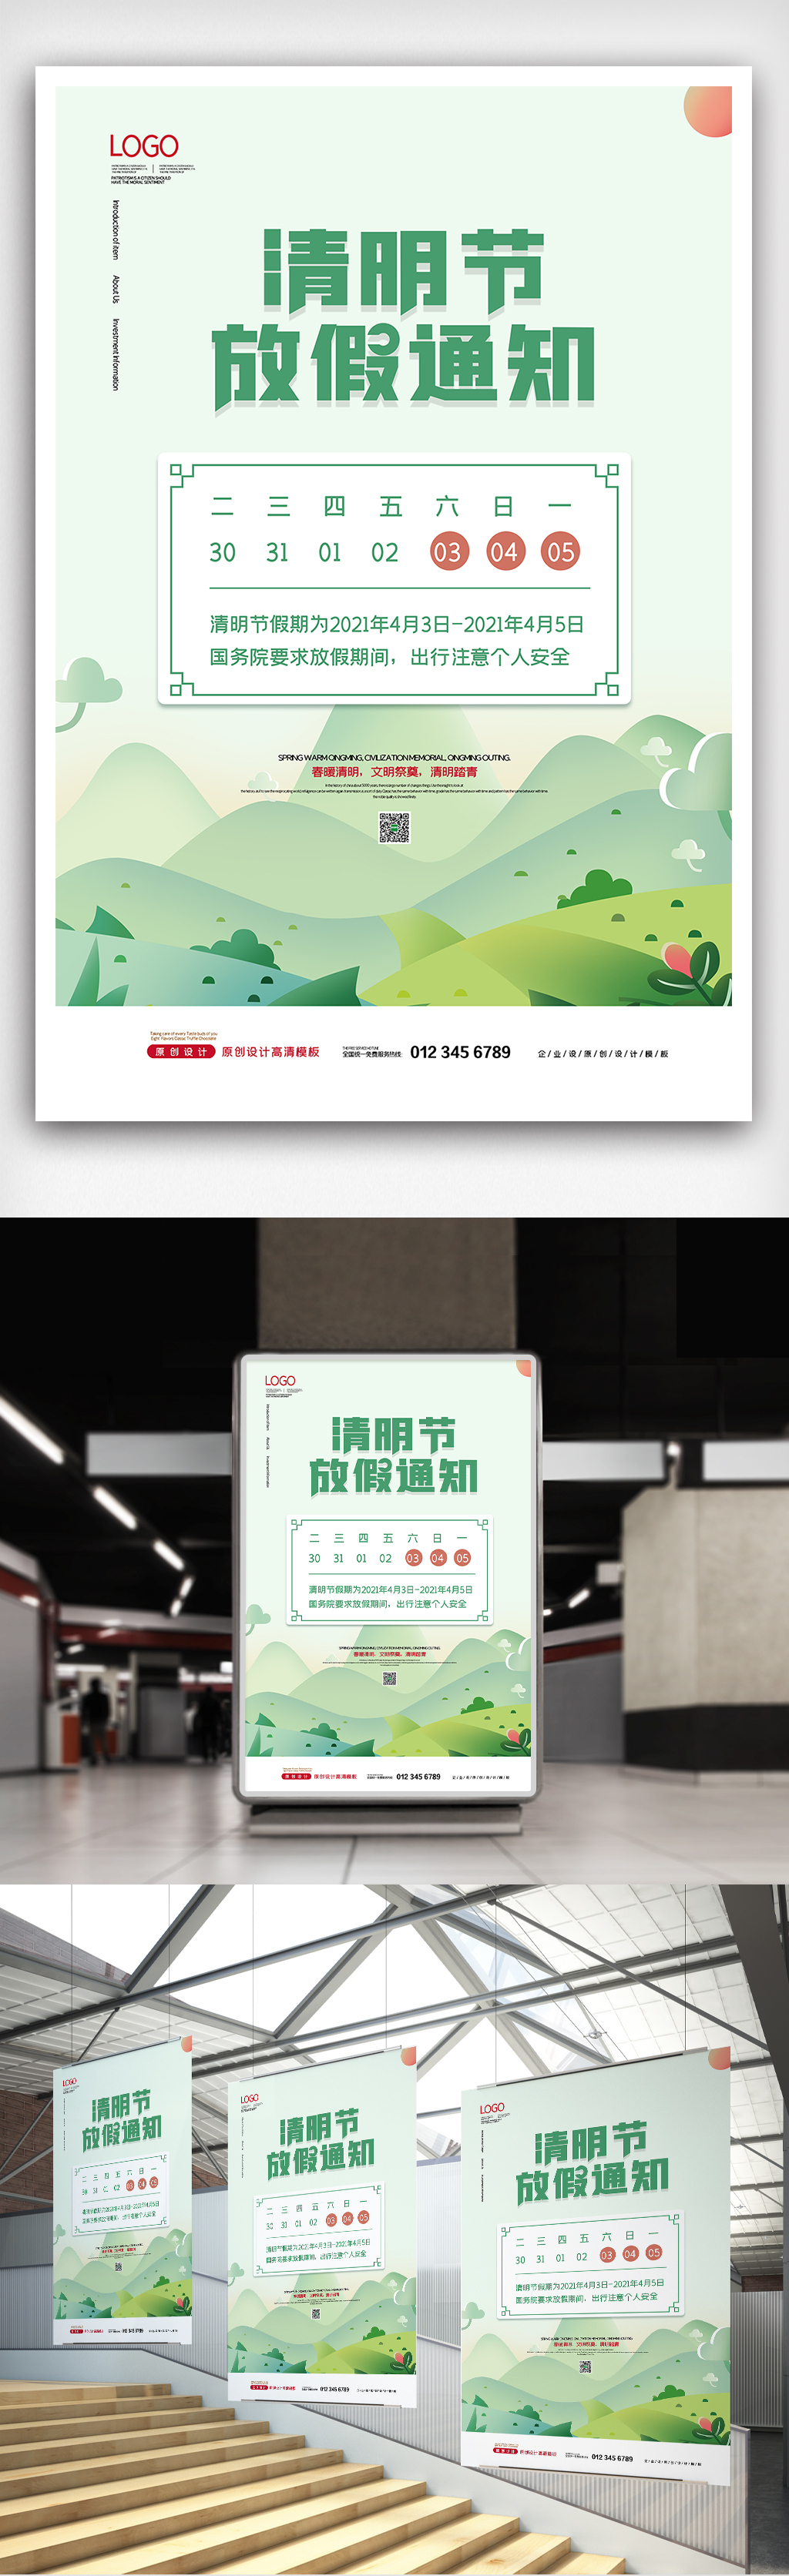 2021小清新中国传统清明节放假通知海报图片